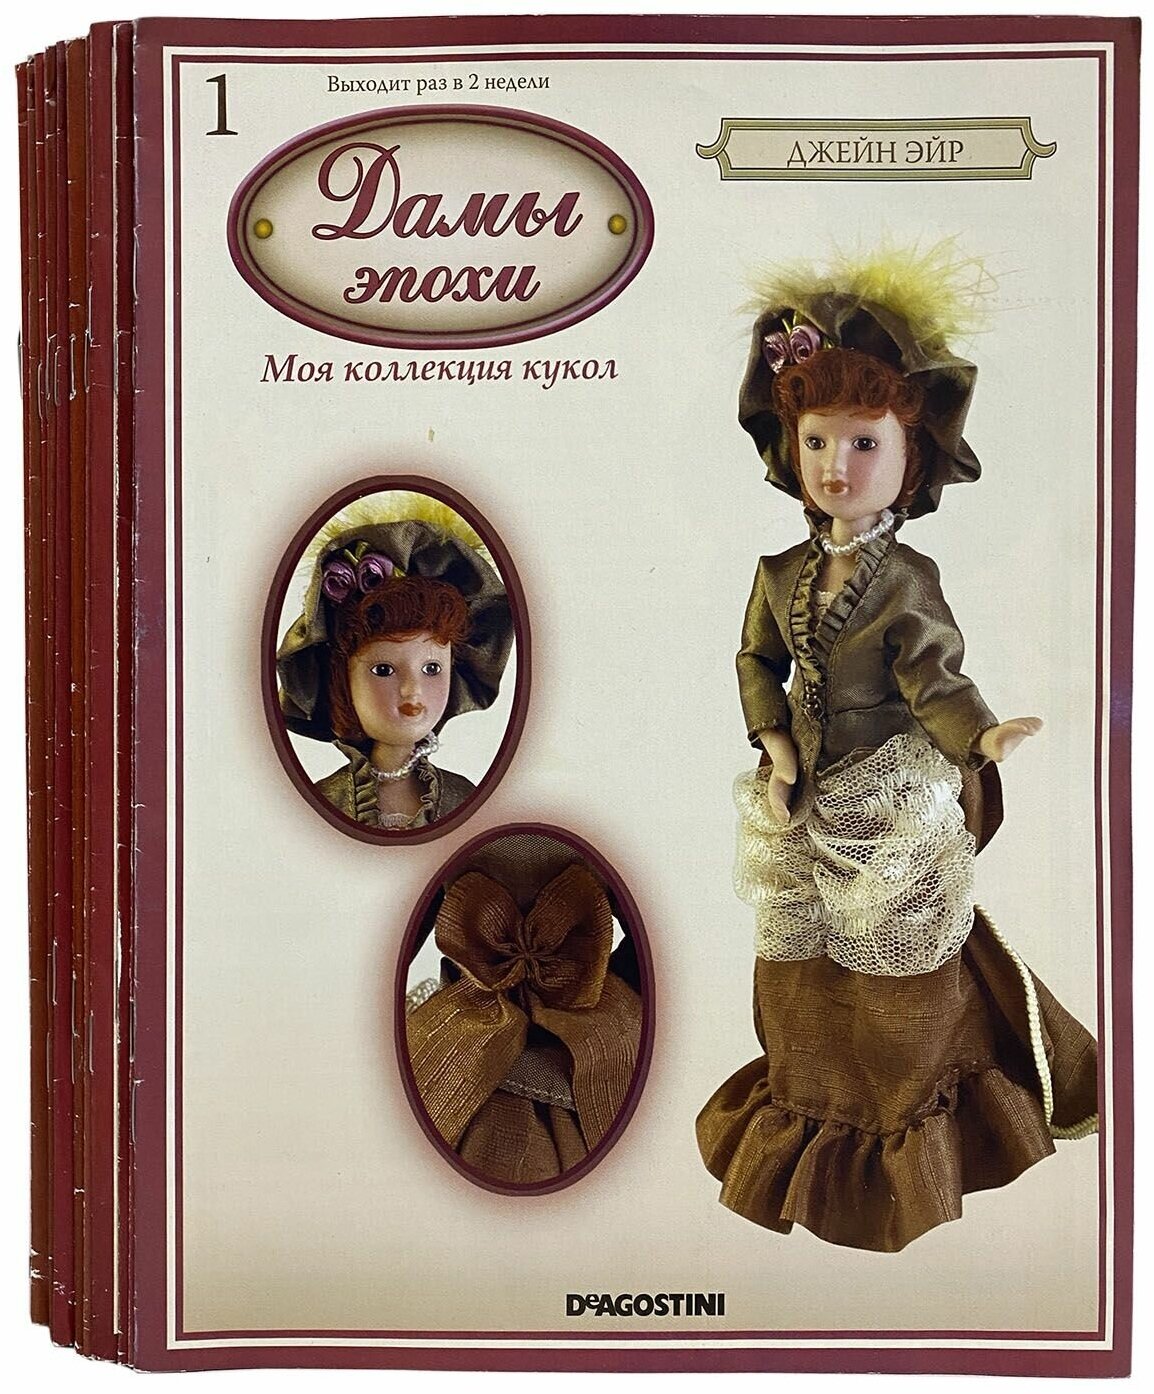 Дамы эпохи. Моя коллекция кукол (комплект из 24 журналов). Год издания 2010